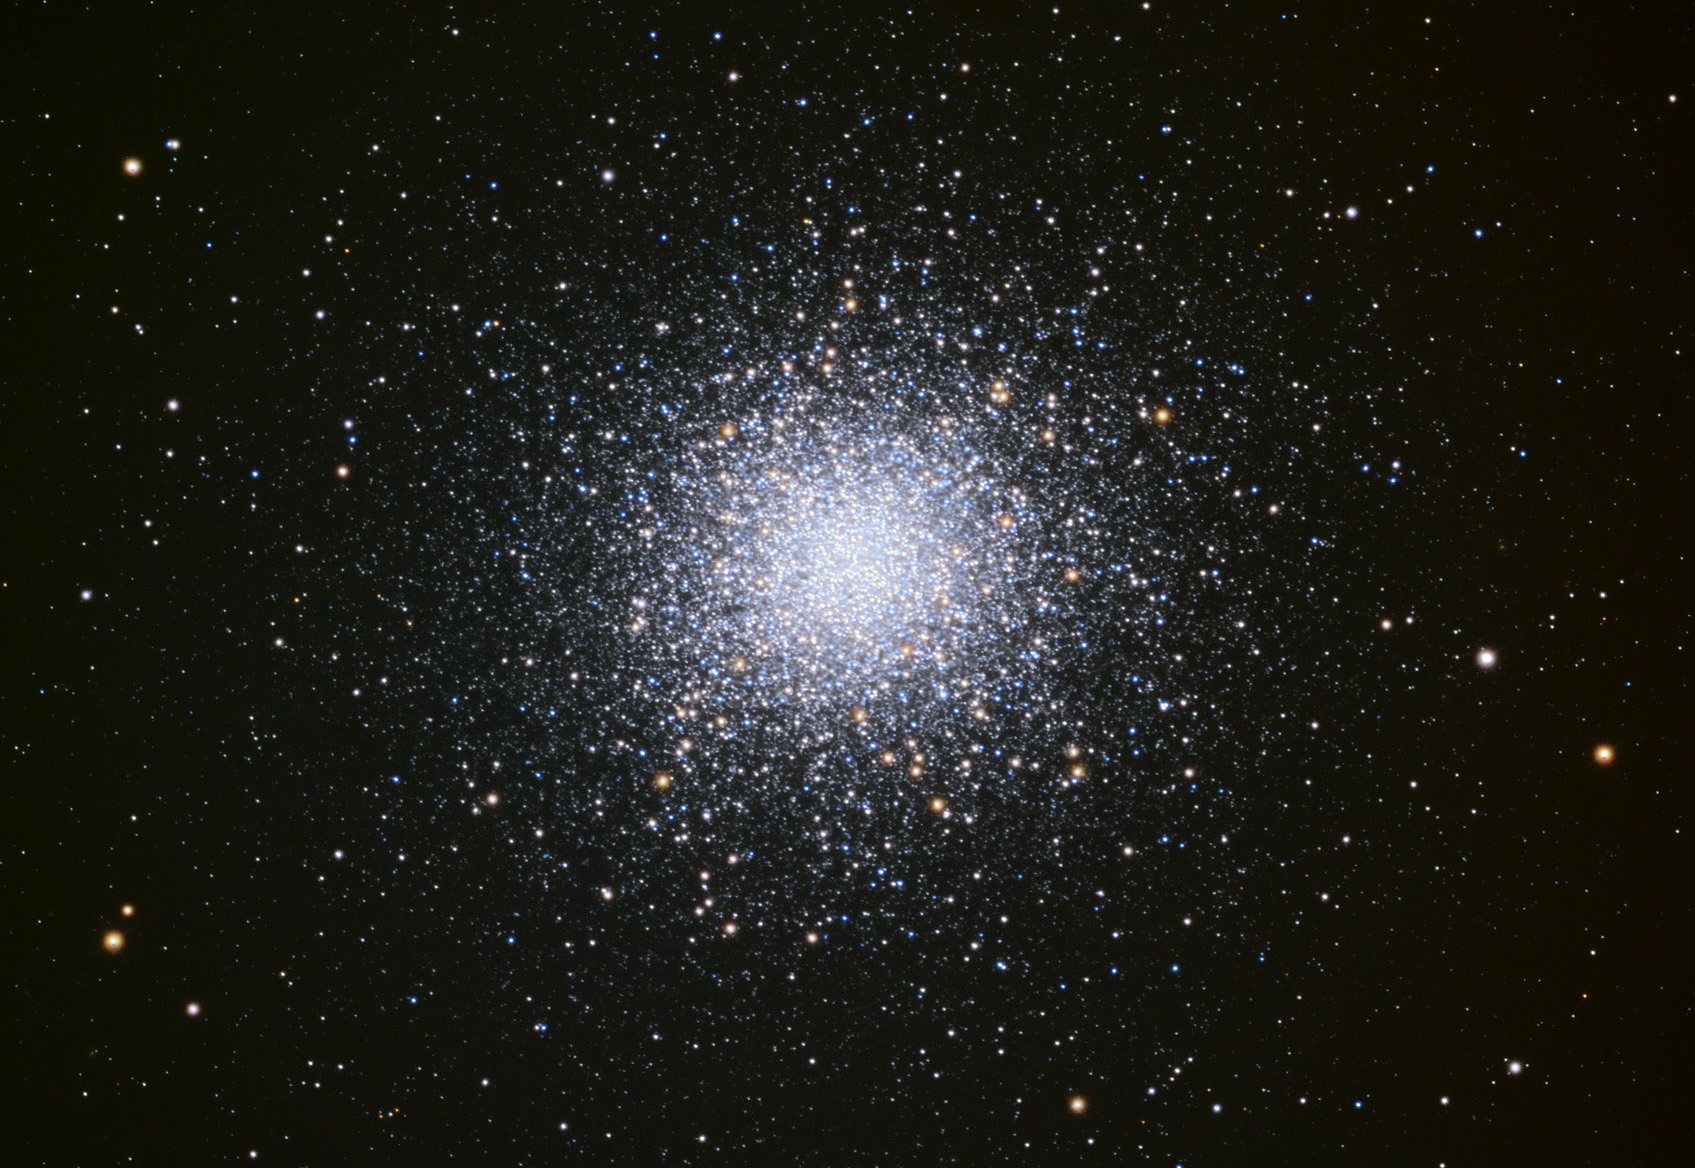 L’amas globulaire M13, à 22 000 années-lumière de la Terre, est constitué d'au moins 100 000 étoiles et peut-être d’un million serrées dans un espace de 150 années-lumière de diamètre. Découvert par Edmond Halley en 1714. M13, encore appelé le « Grand Amas Globulaire d'Hercule », est l'un des amas les plus remarquables et les plus connus de l'hémisphère céleste nord. © Adam Block (Observatoire du mont Lemmon, Université de l'Arizona)